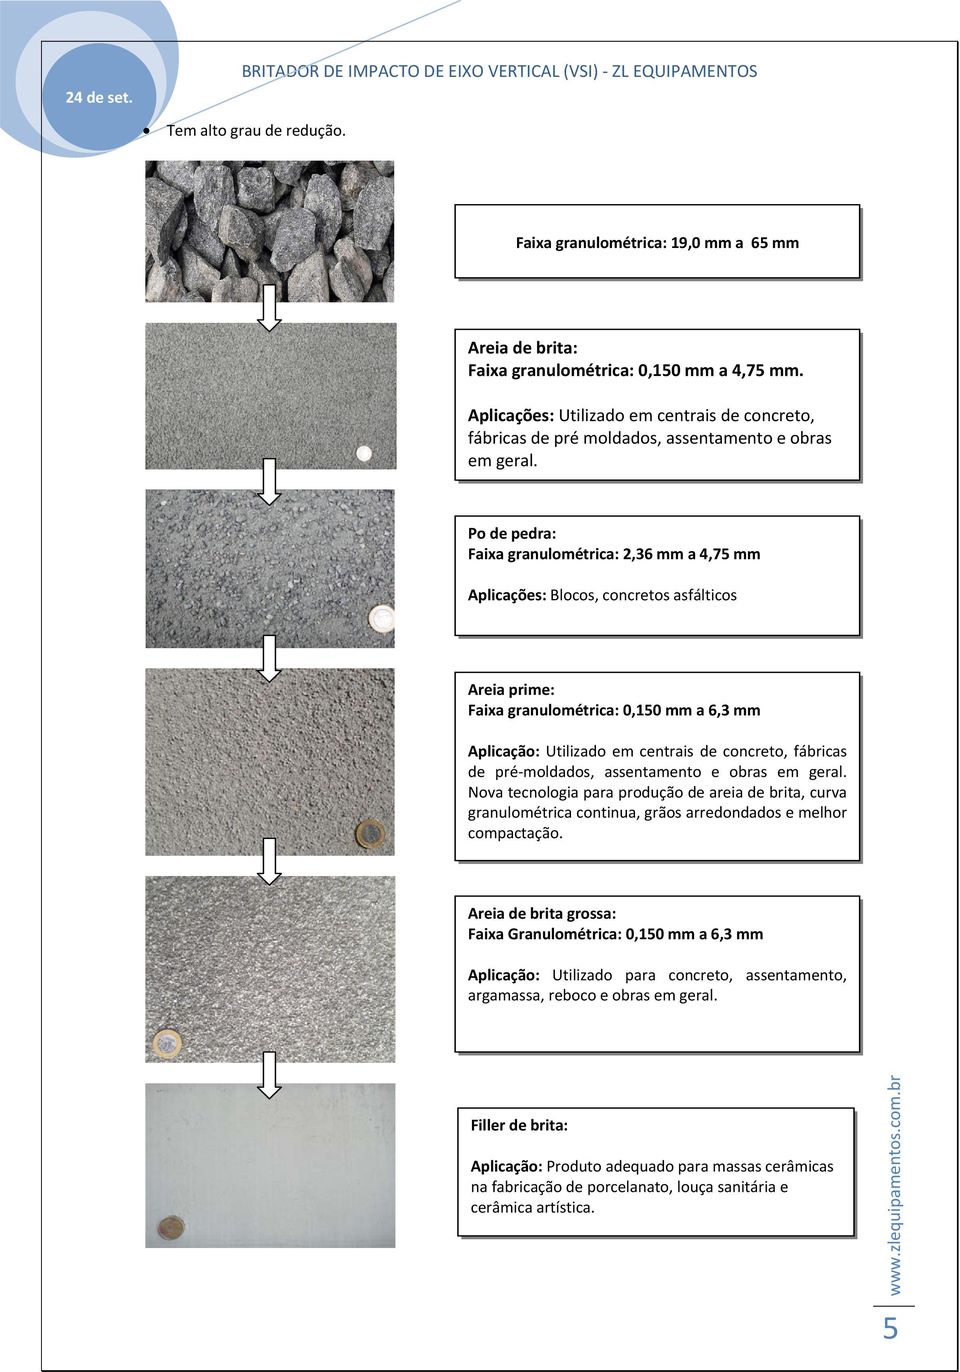 Po de pedra: Faixa granulométrica: 2,36 mm a 4,75 mm Aplicações: Blocos, concretos asfálticos Areia prime: Faixa granulométrica: 0,150 mm a 6,3 mm Aplicação: Utilizado em centrais de concreto,